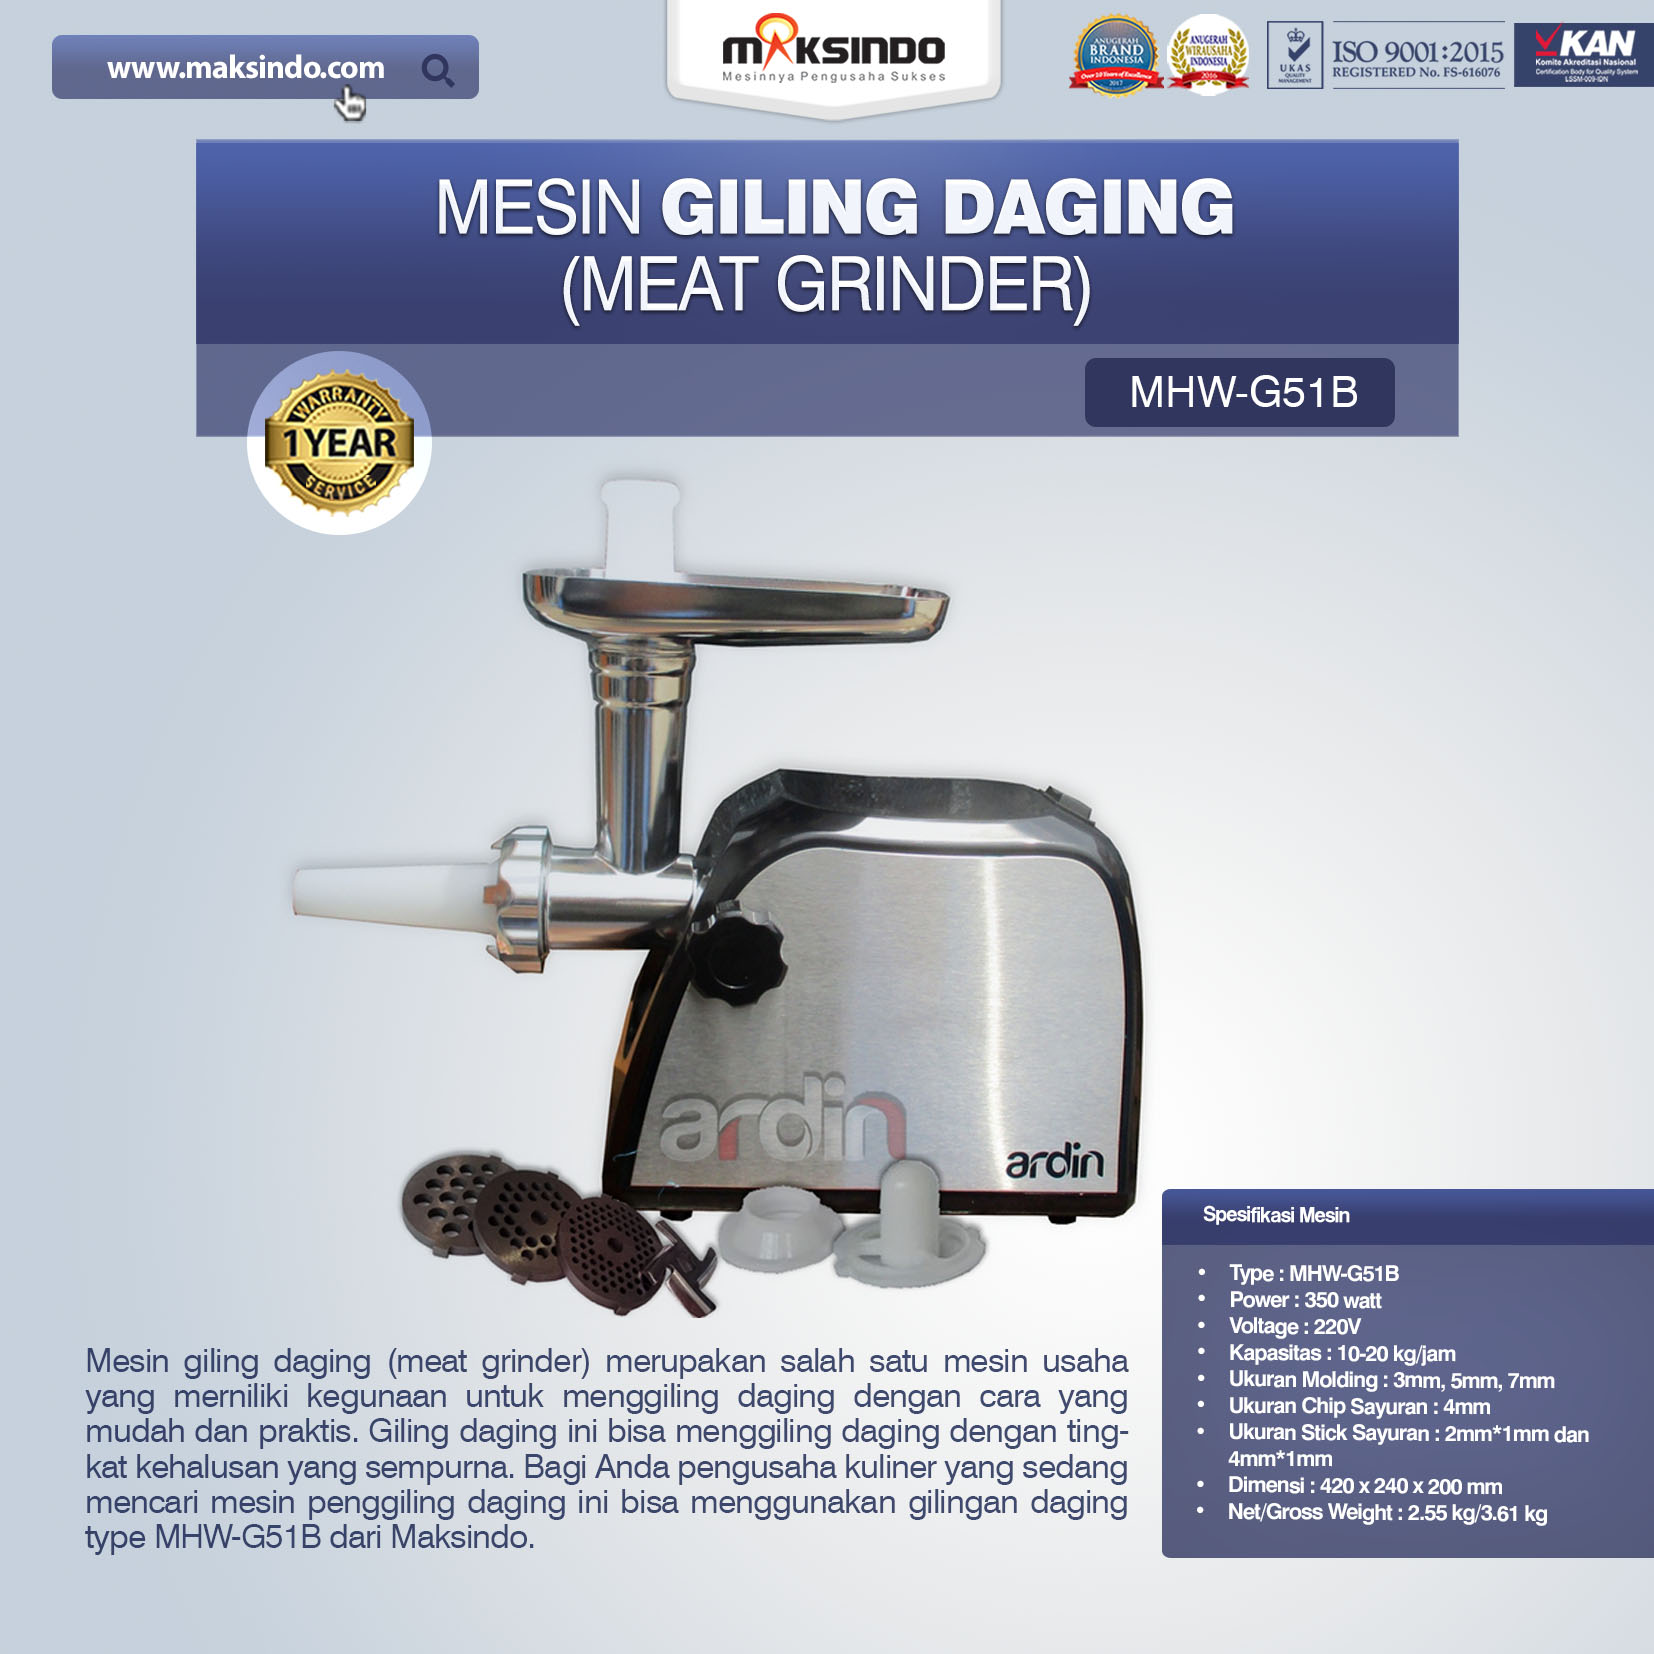 Jual Mesin Giling Daging (Meat Grinder) MHW-G51B di Yogyakarta